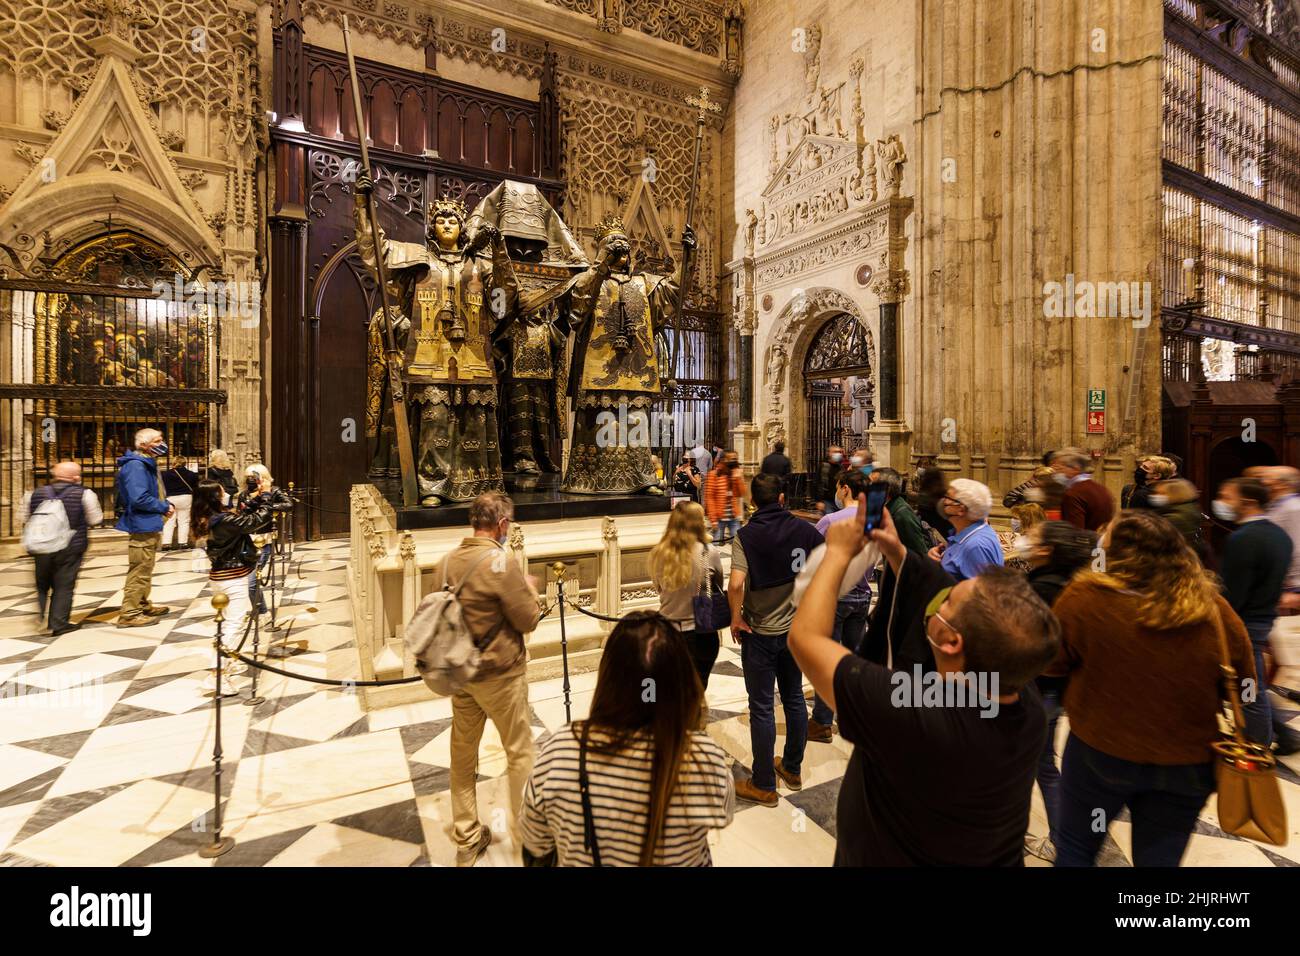 Siviglia, Spagna - Novembre 09 2021: I turisti fotografano la famosa tomba di Cristoforo Colombo all'interno dell'imponente cattedrale di Siviglia, nota anche come la Foto Stock